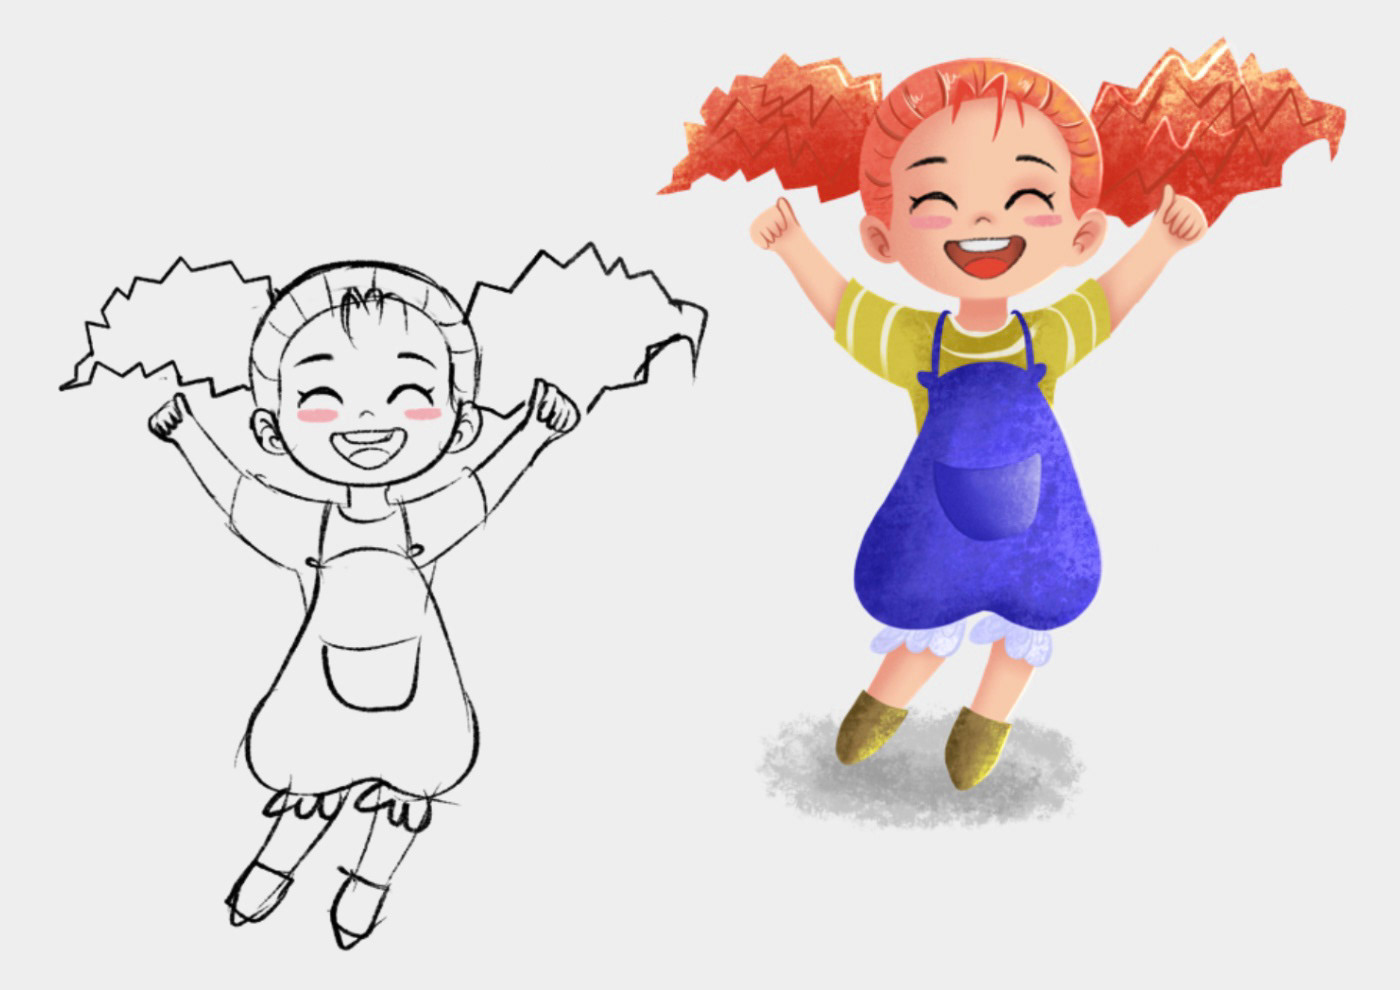 characterdesign childrencharacter children ChildrenIllustration ILLUSTRATION  digitalpainting